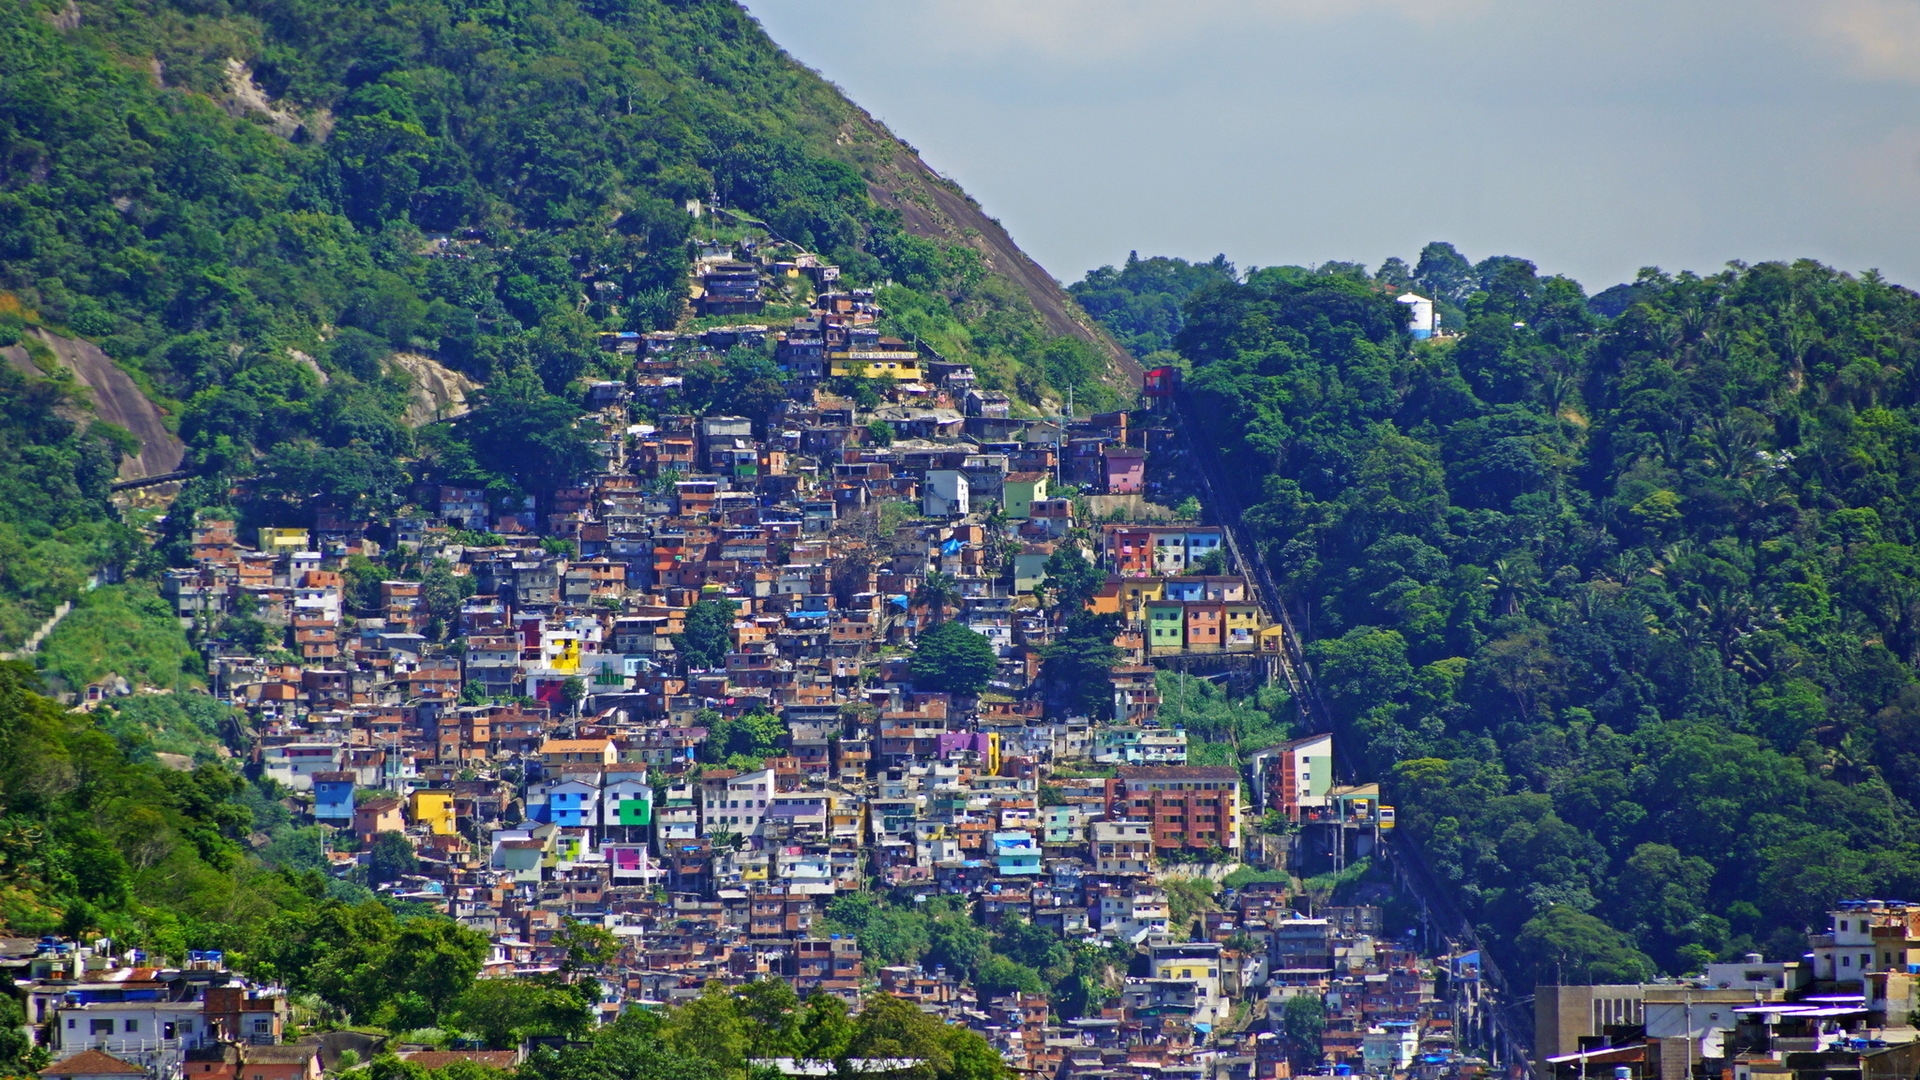 Rio de Janeiro Mountains Houses for 1920 x 1080 HDTV 1080p resolution